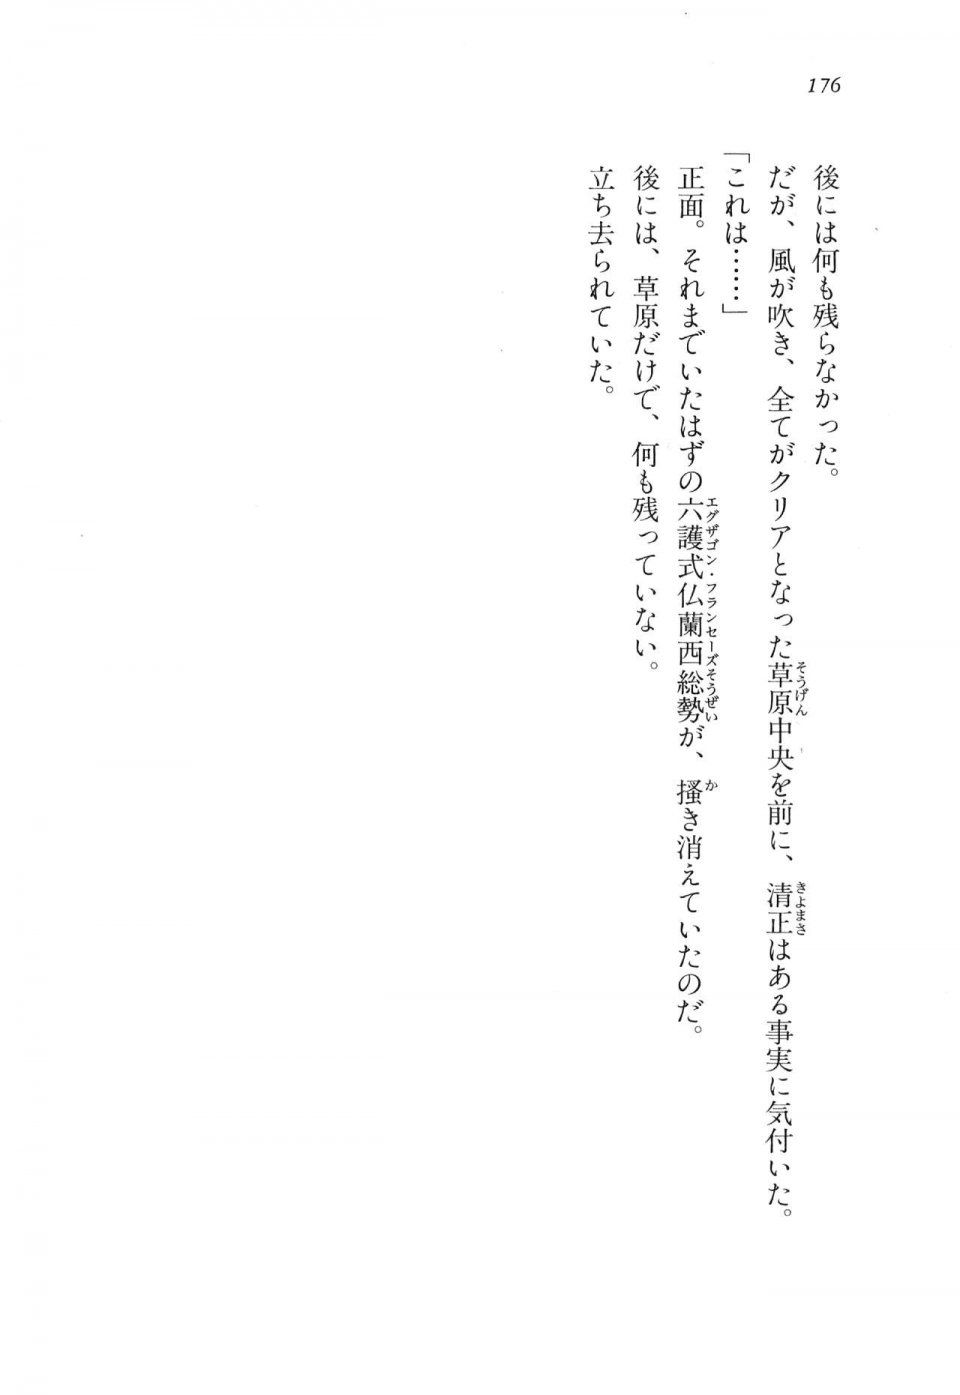 Kyoukai Senjou no Horizon LN Vol 11(5A) - Photo #176